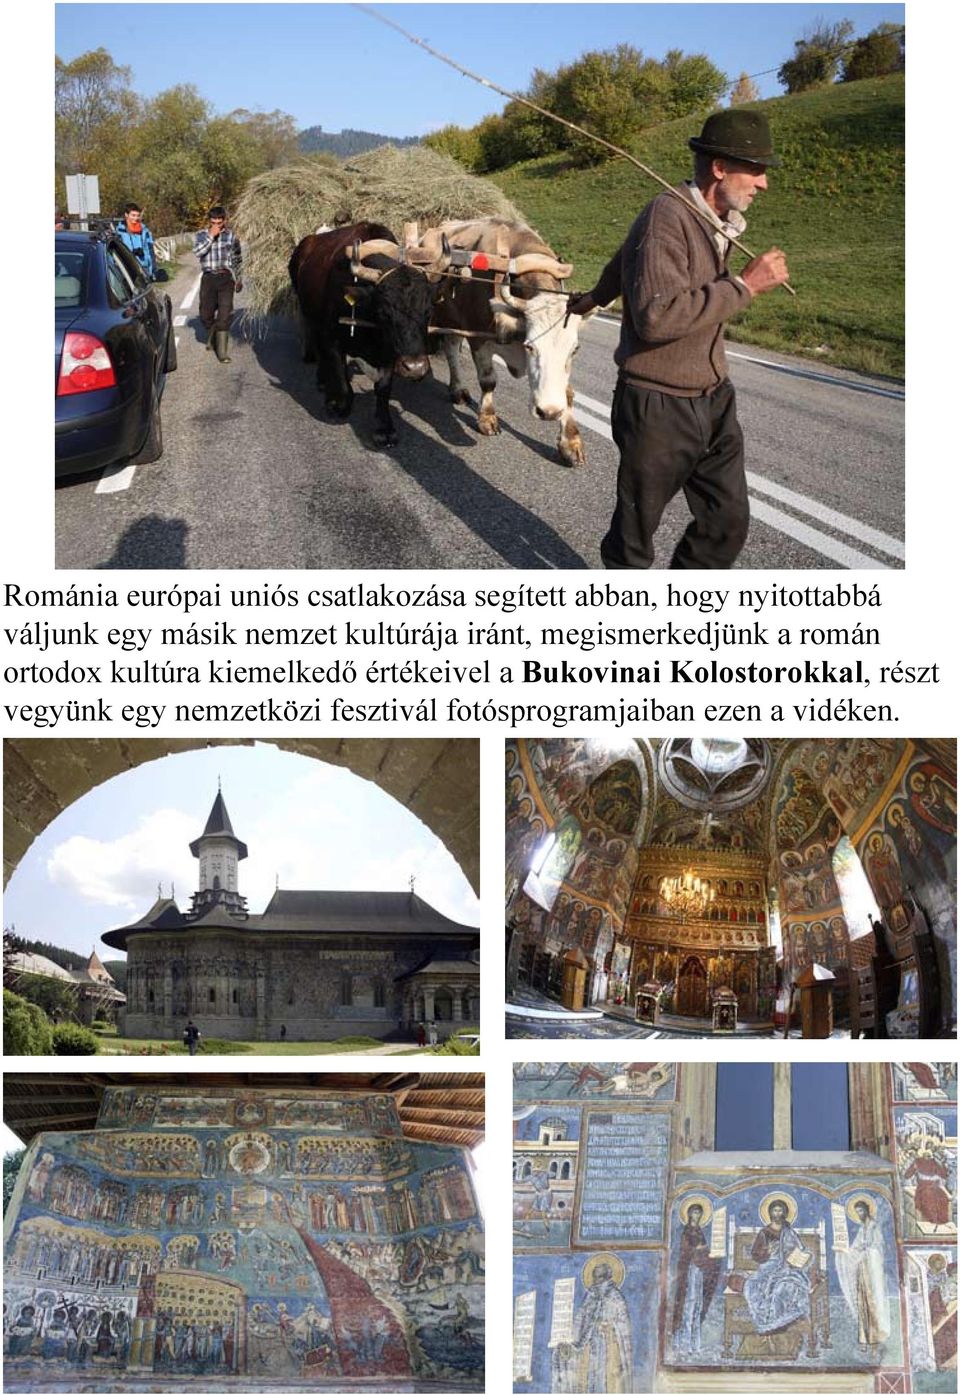 ortodox kultúra kiemelkedő értékeivel a Bukovinai Kolostorokkal,